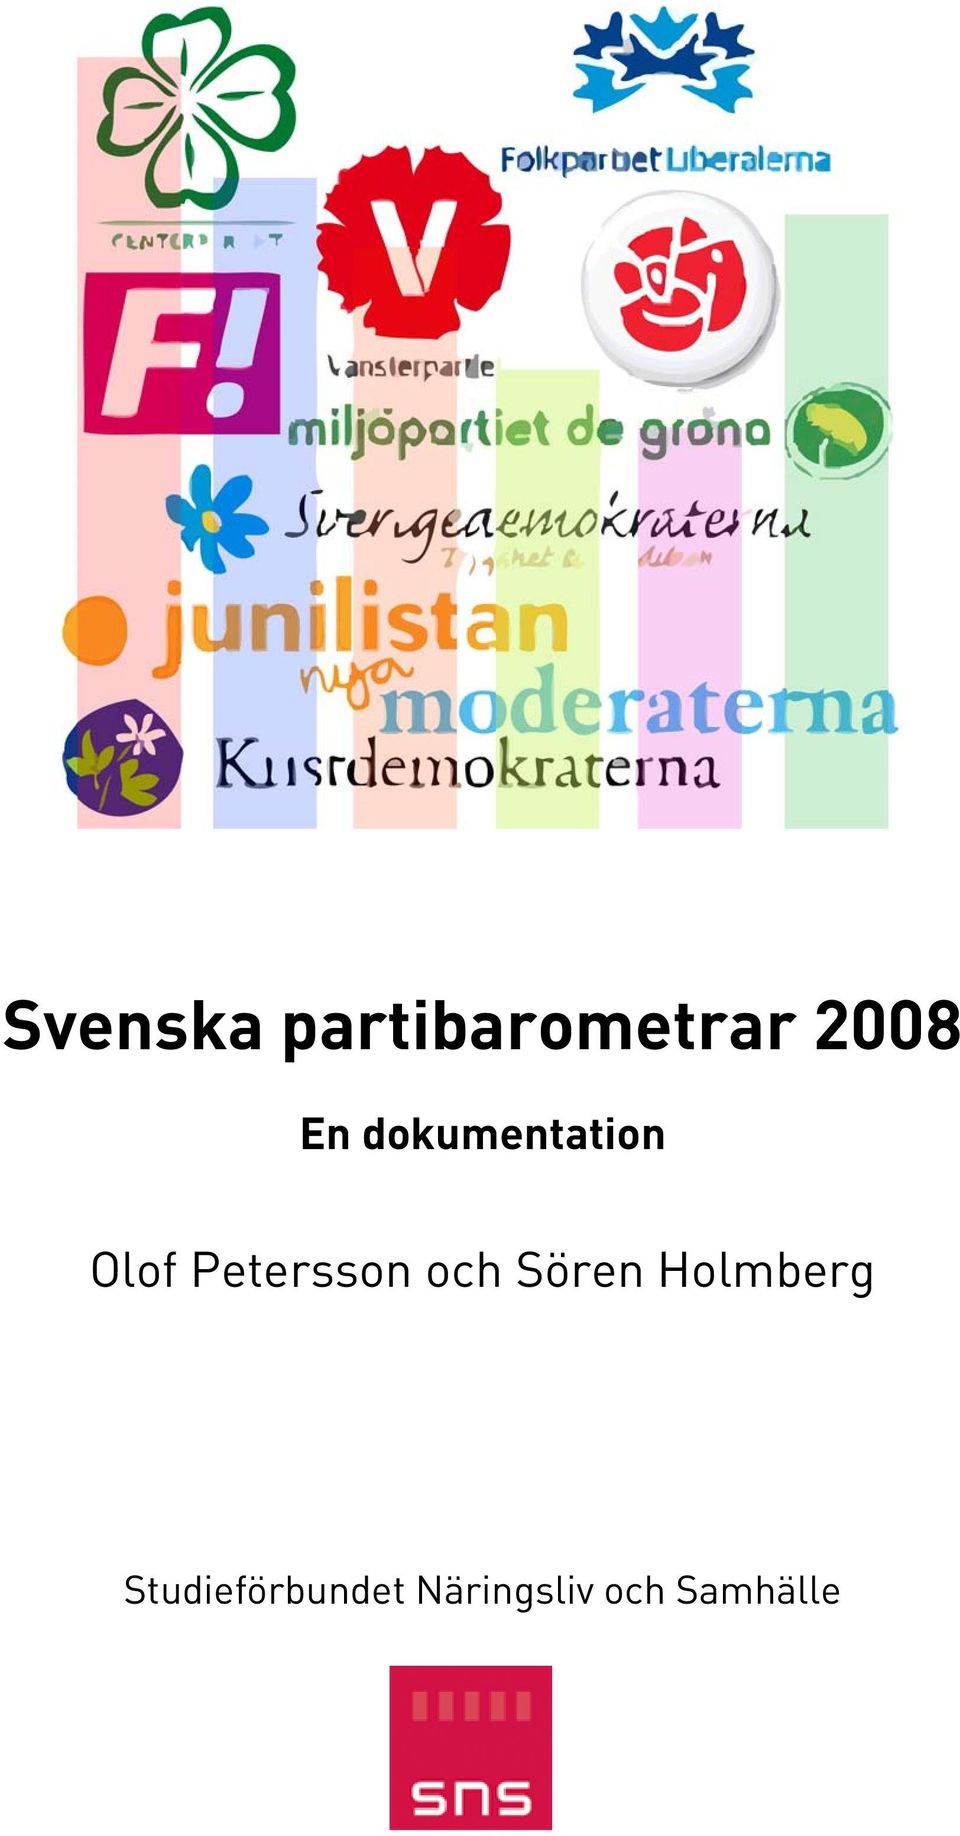 Petersson och Sören Holmberg